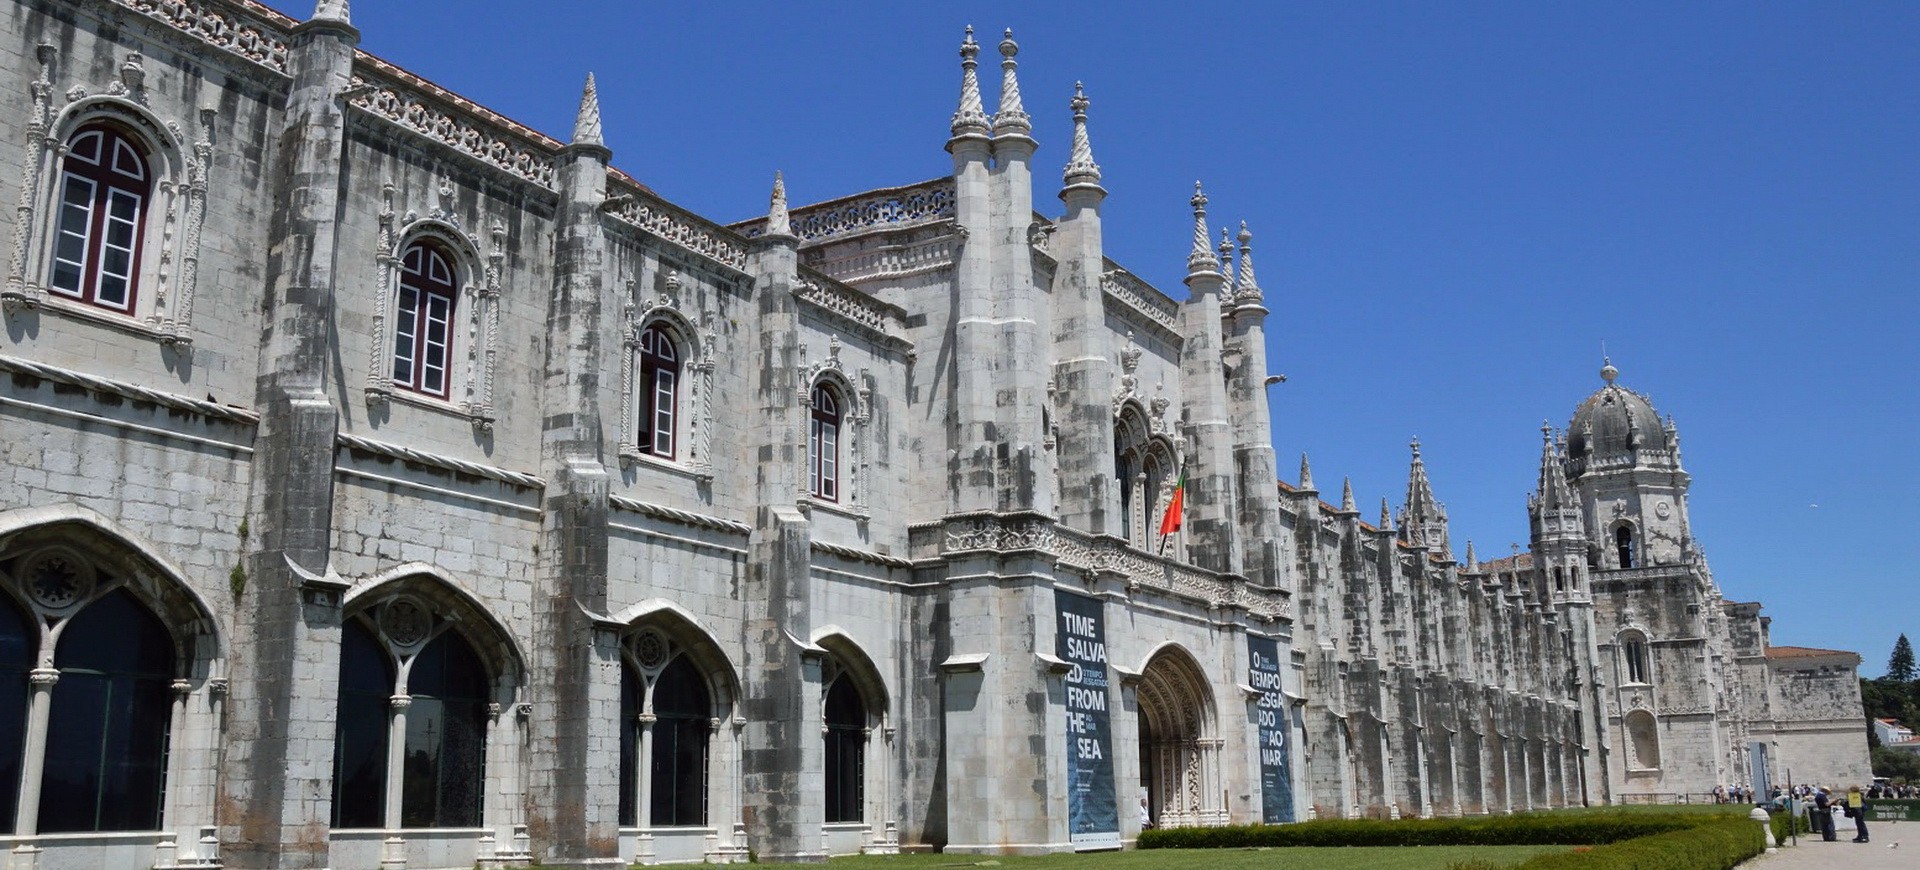 Portugal Lisbonne Monastère de Jeronimos